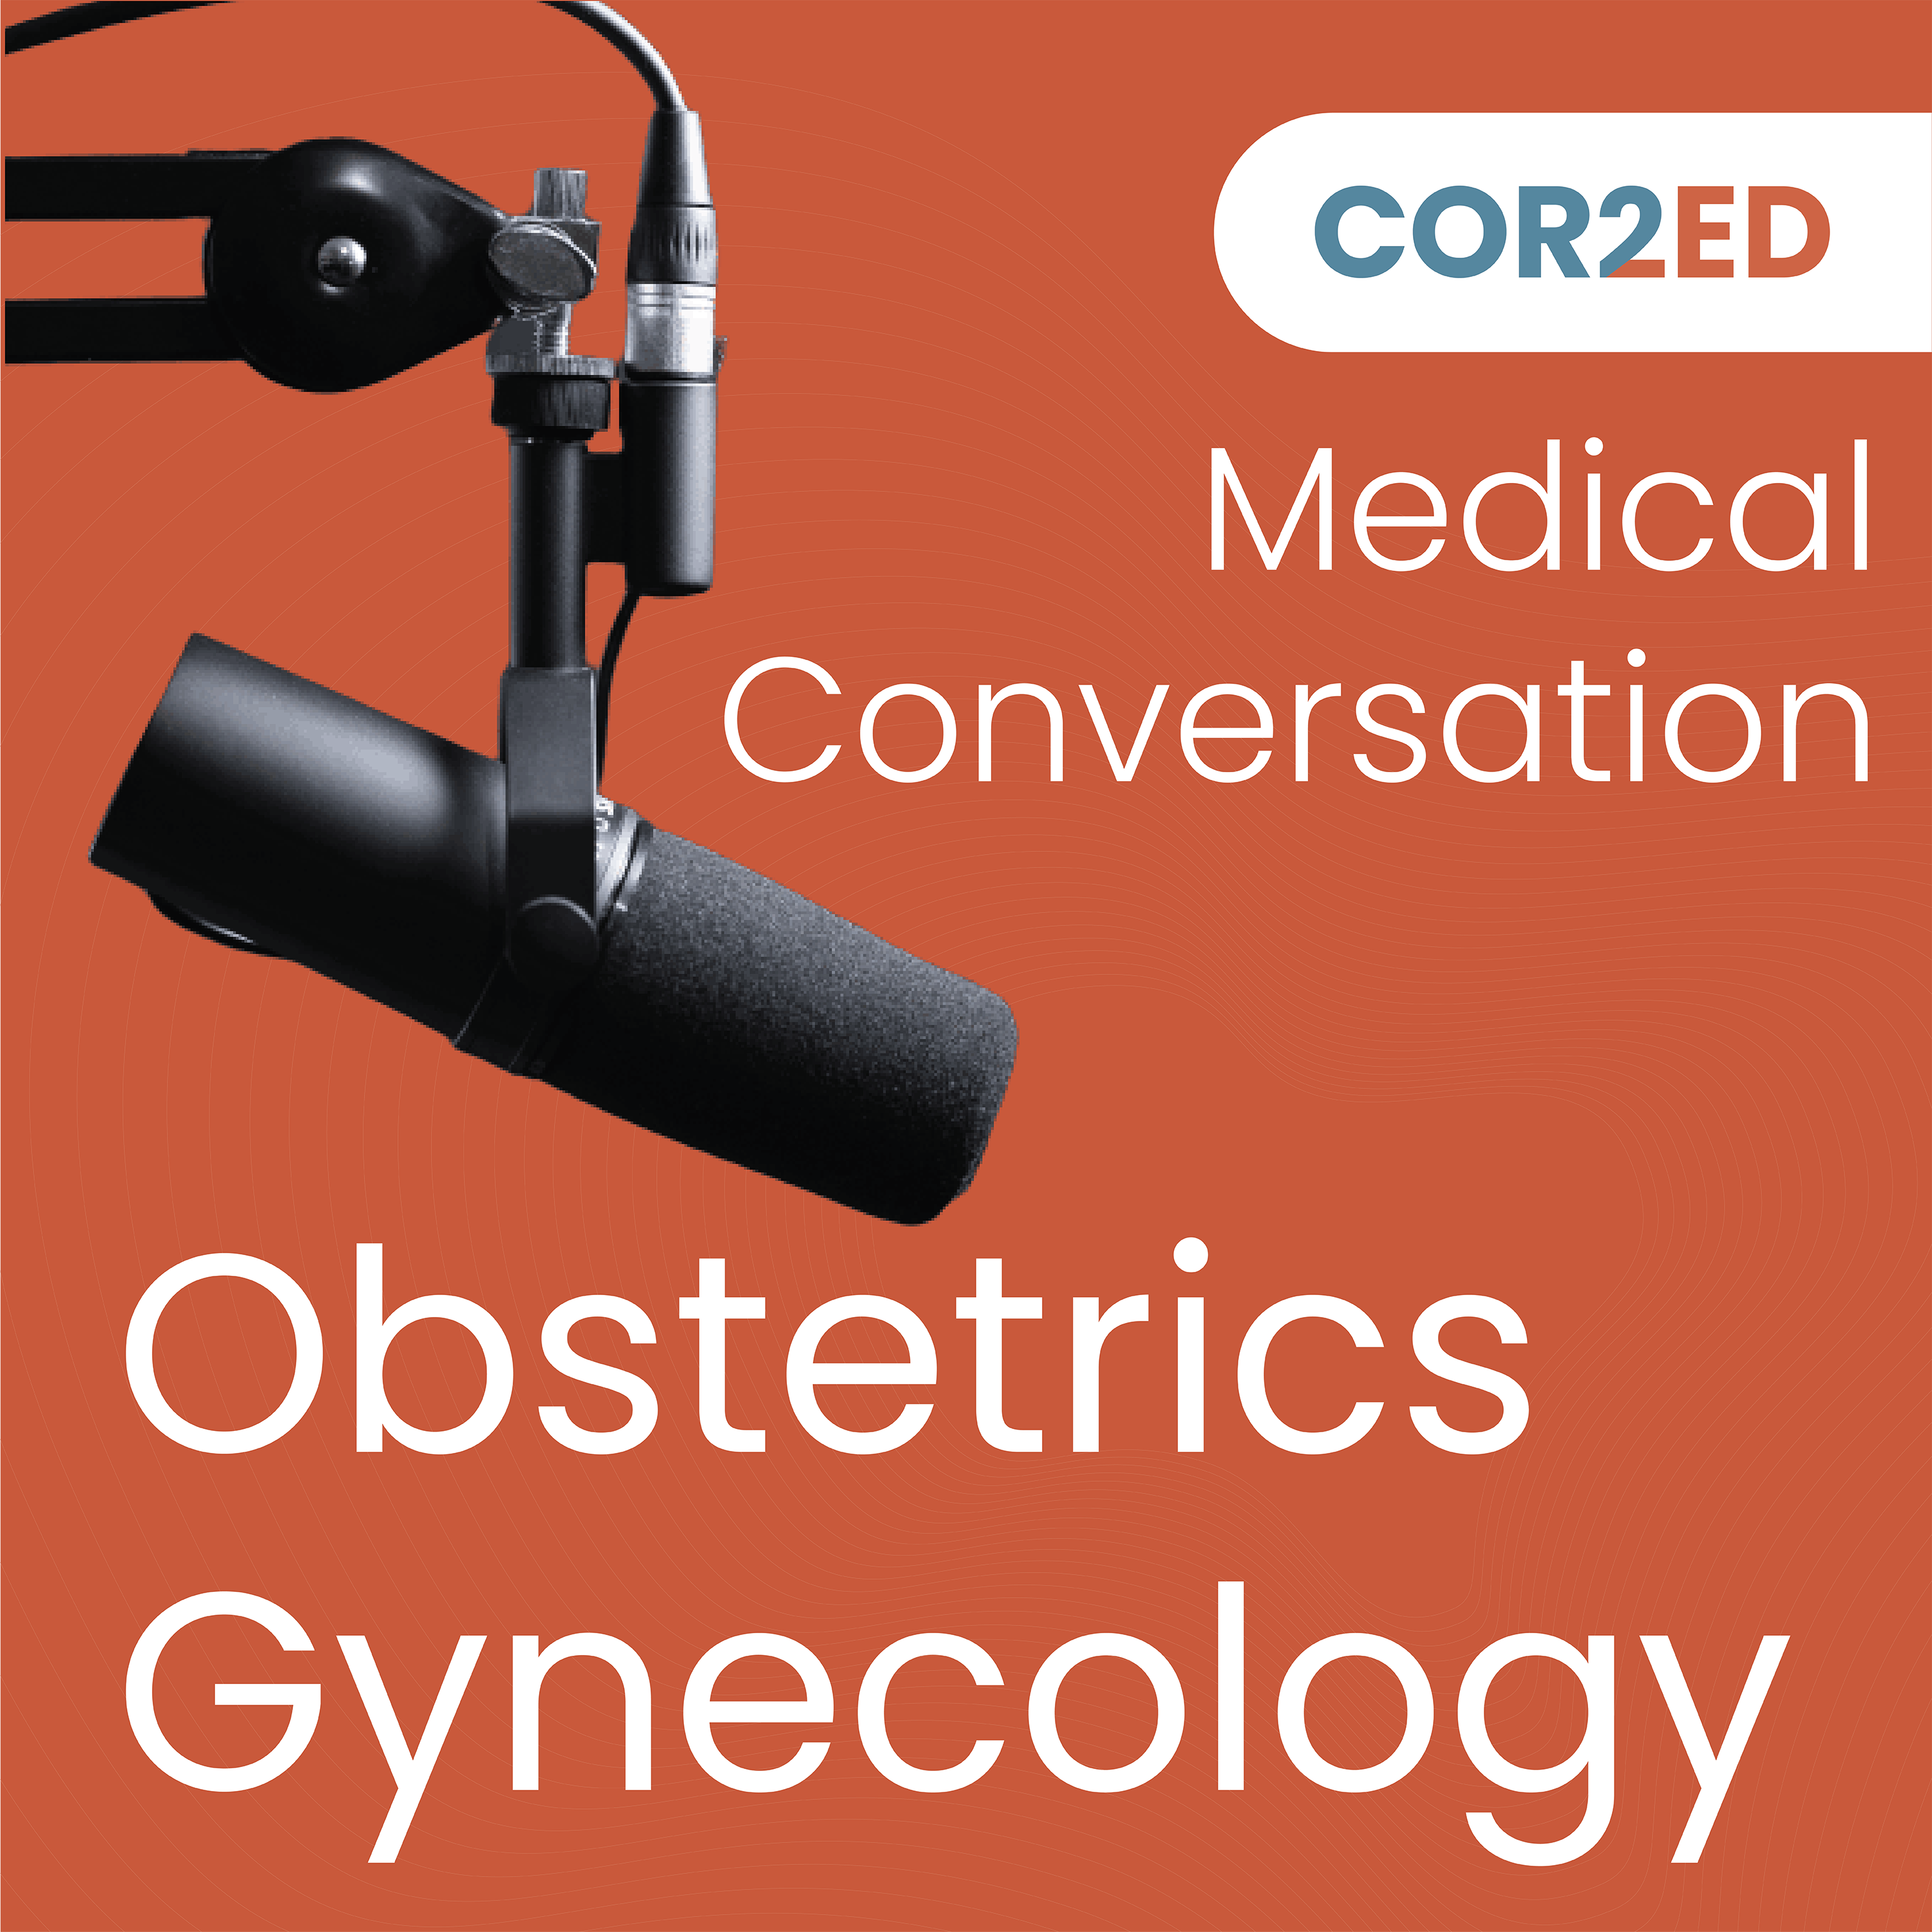 Obstetrics & Gynecology Medical Conversation